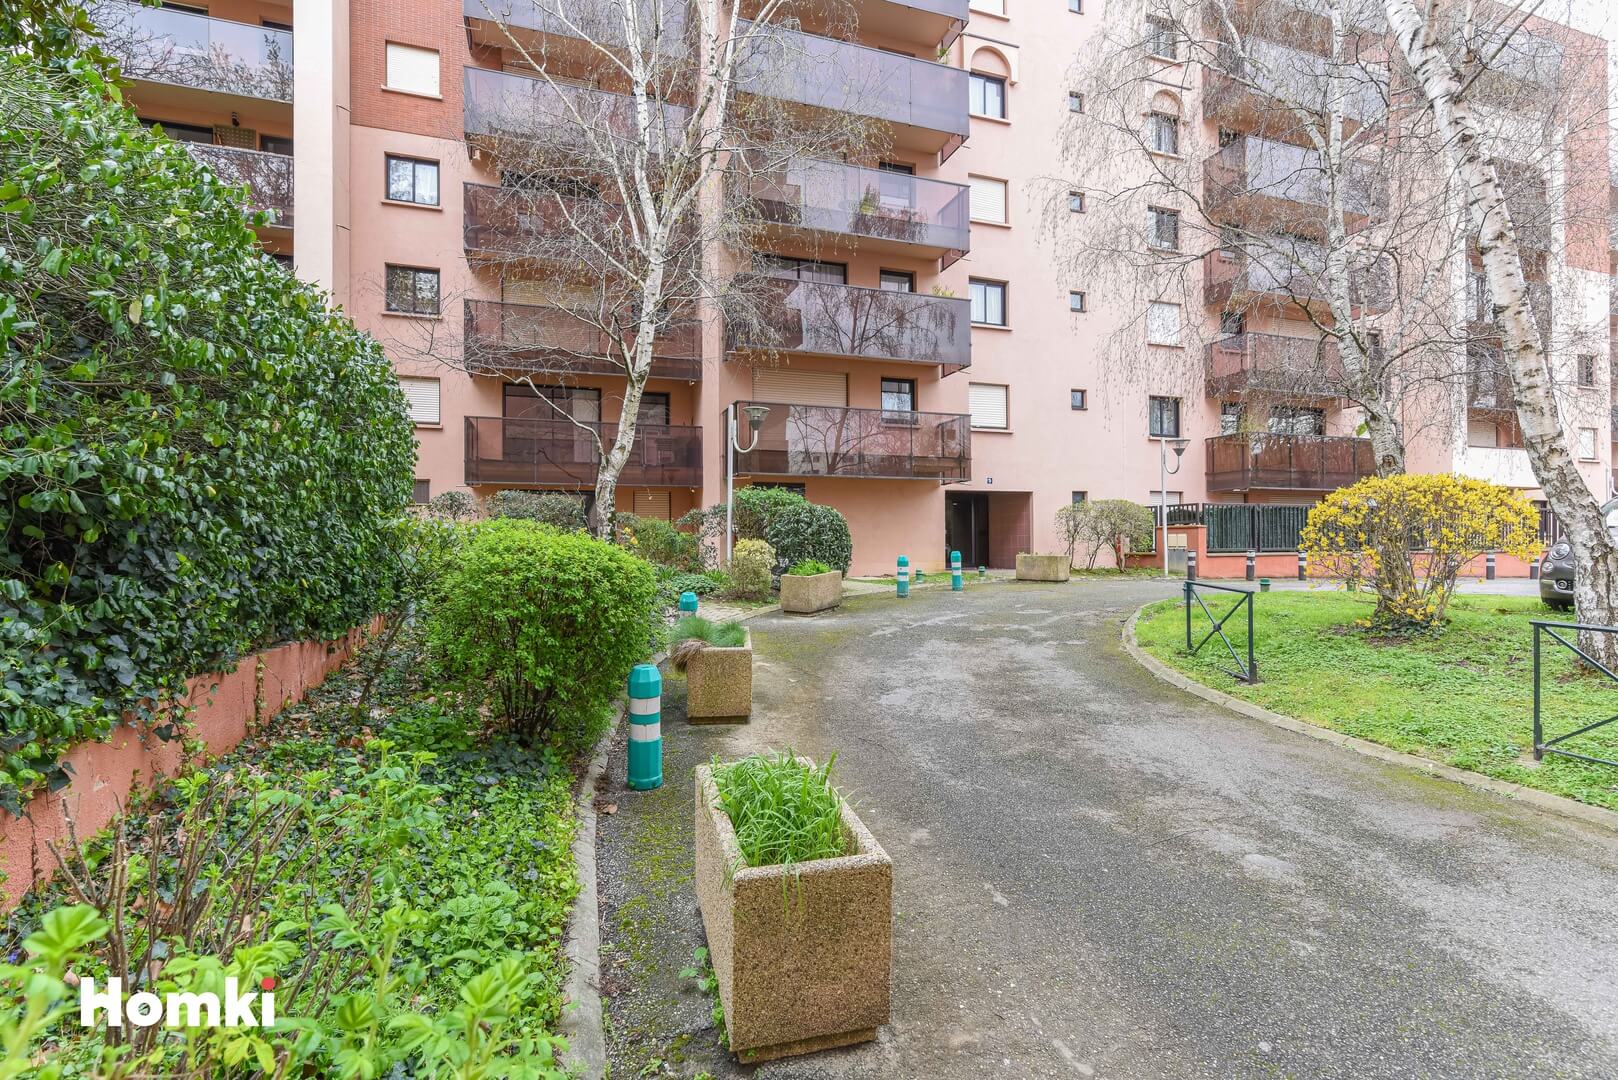 Homki - Vente Appartement  de 32.0 m² à Toulouse 31400